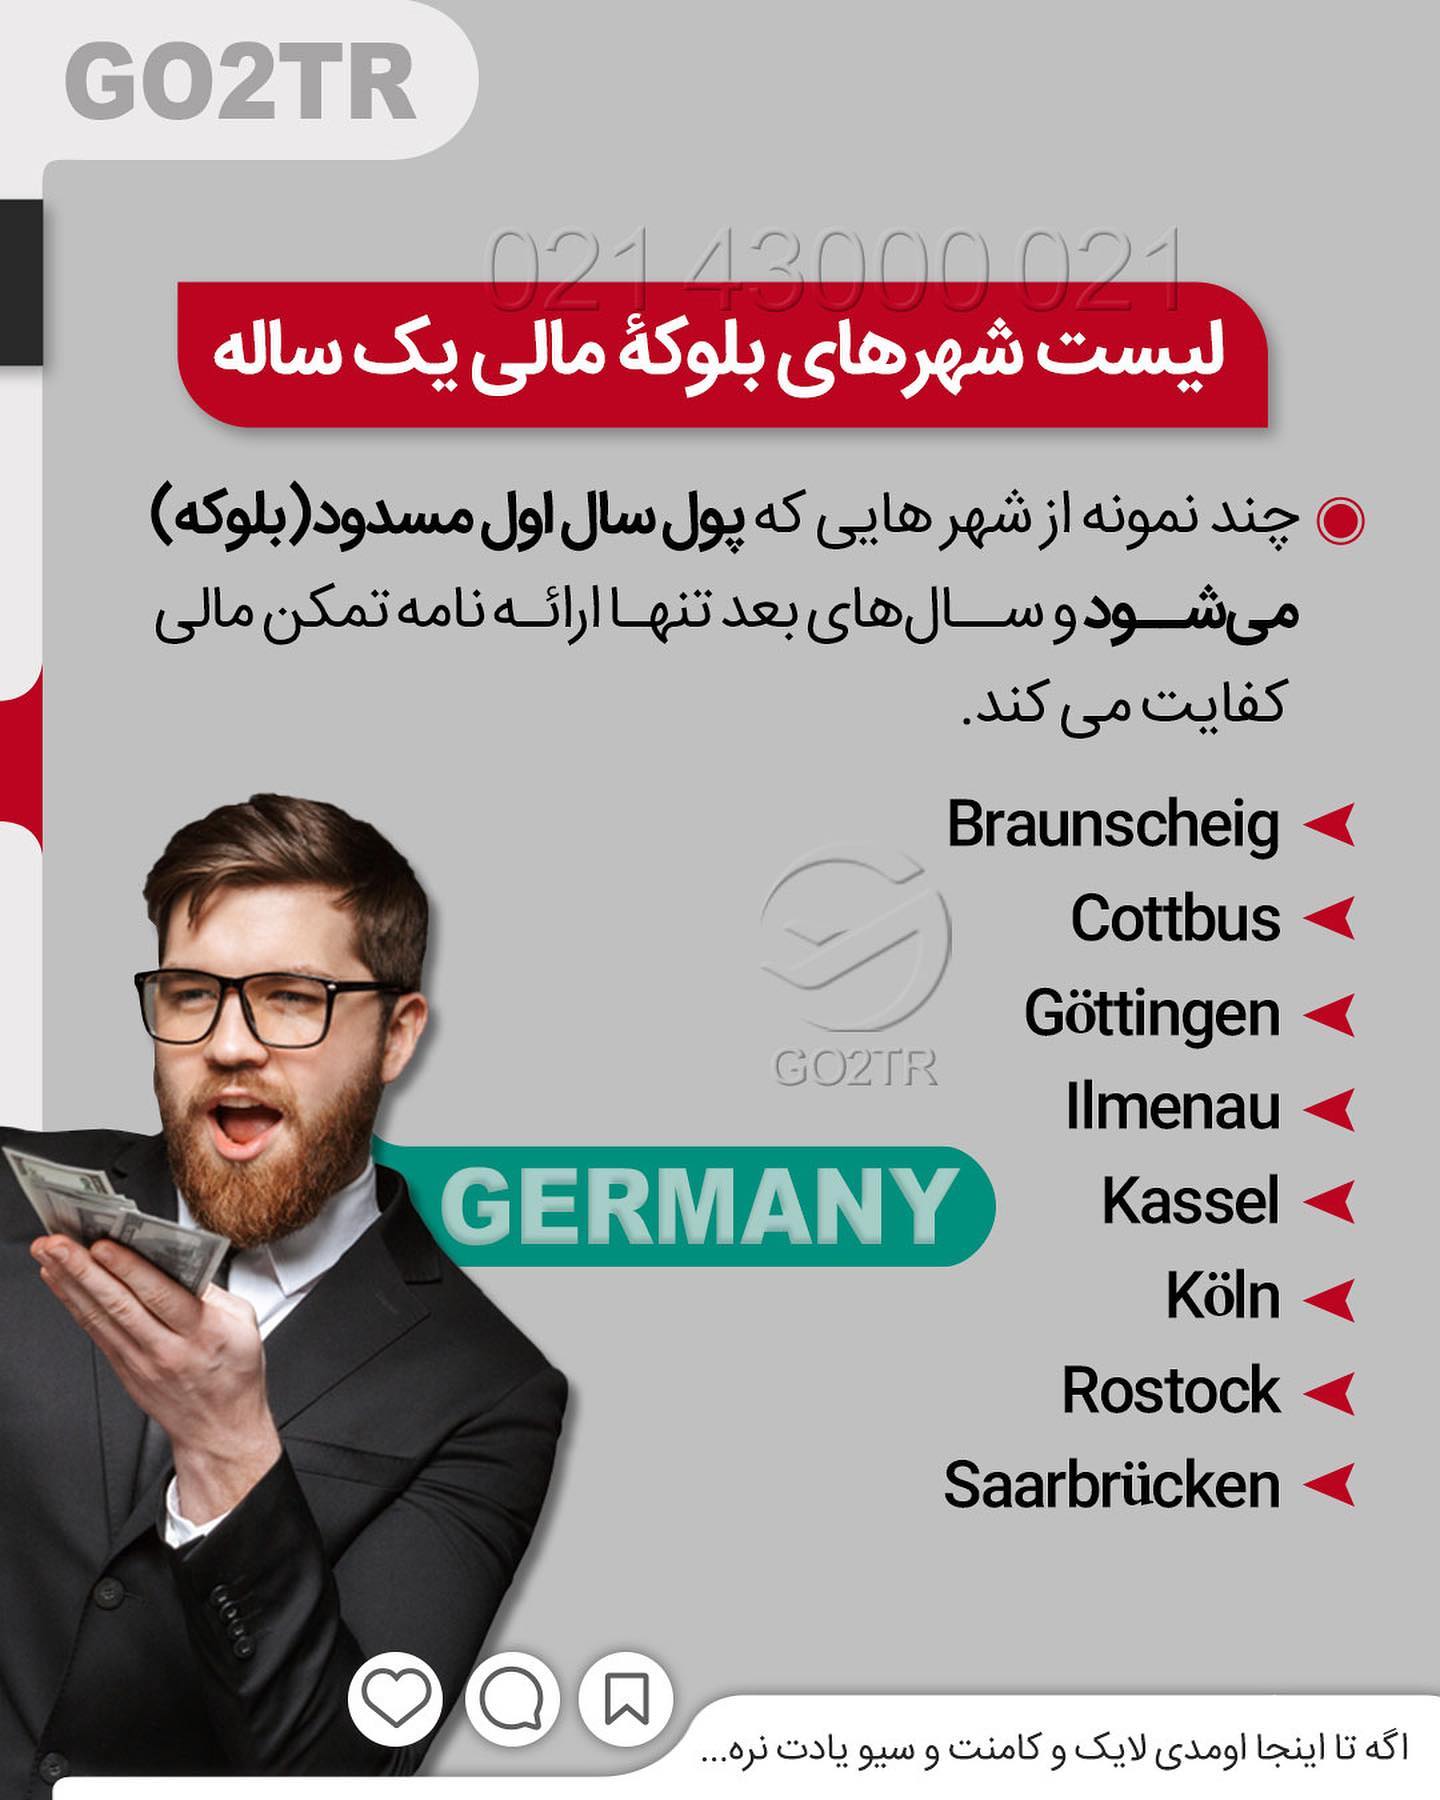 کیه که ندونه تحصیل در آلمان به زبان آلمانی رایگانه... 🤩 . • حقیقت اینه تحصیل د�